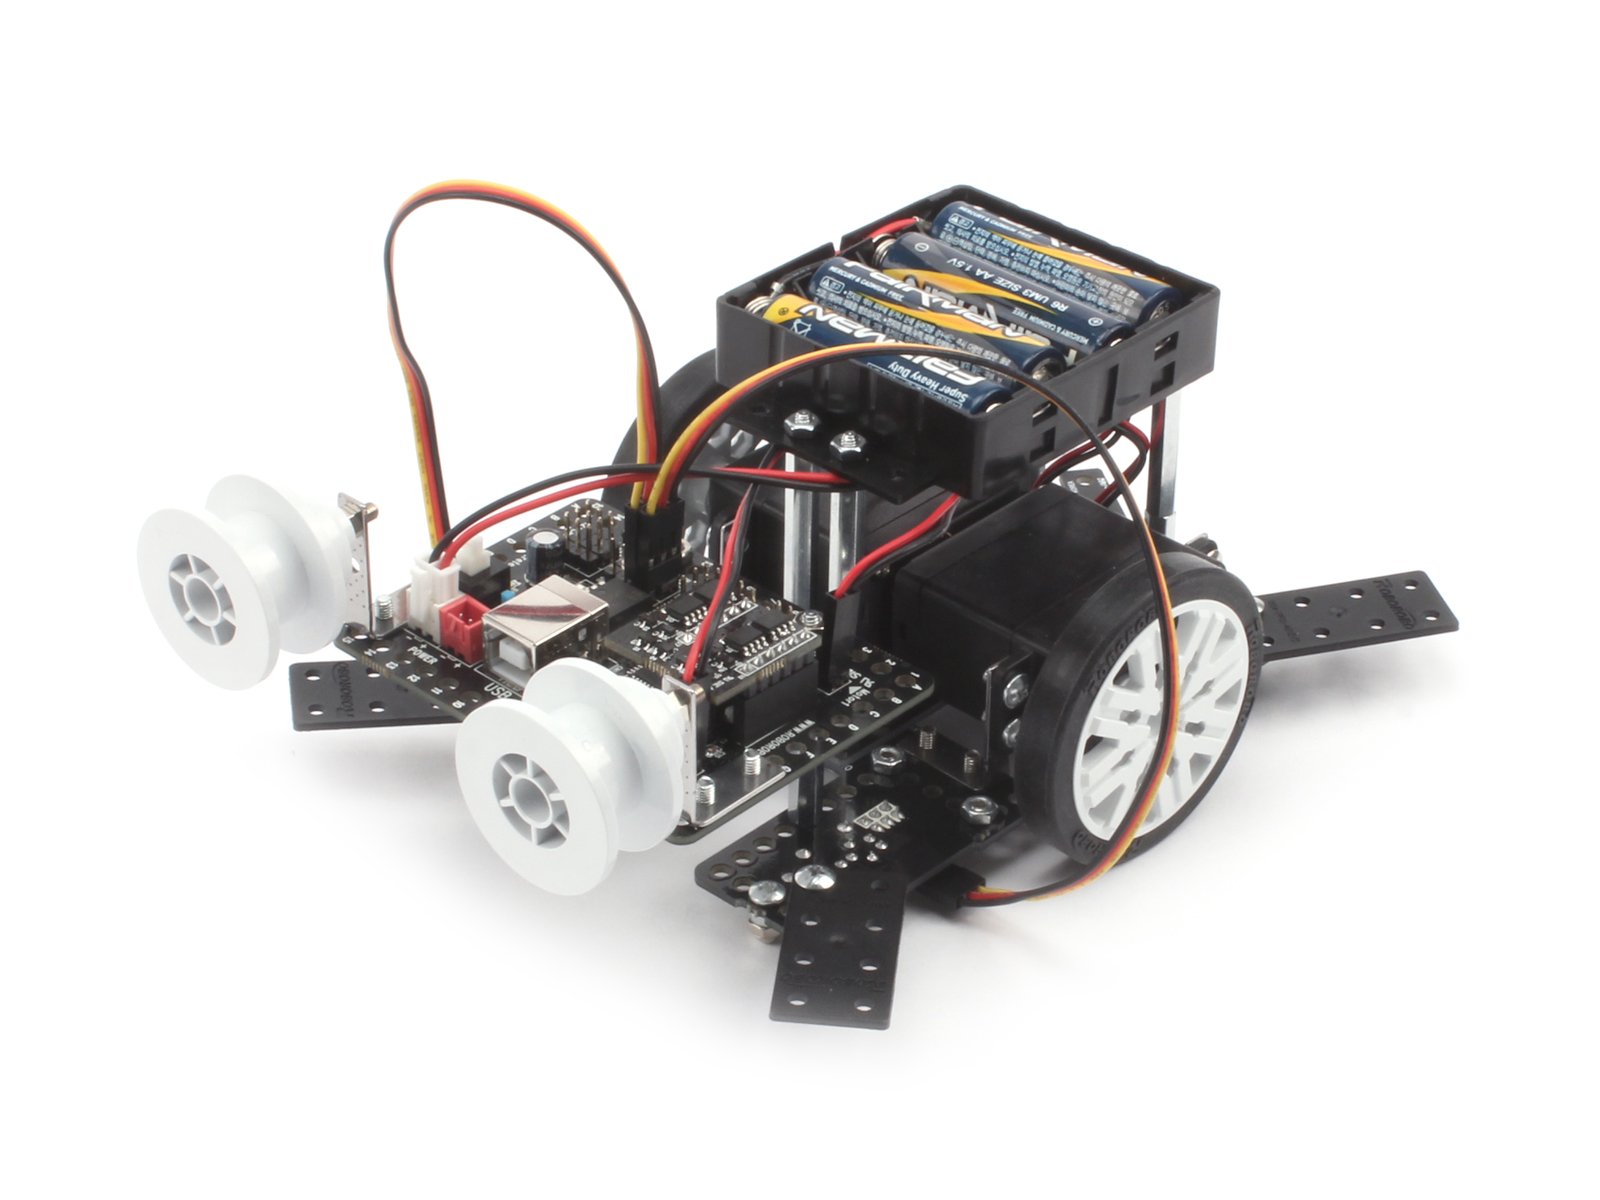 Ресурсный набор Robo Kit 1-2 для изучения гусеничного транспорта и STEM технологий к набору Robo kit 1